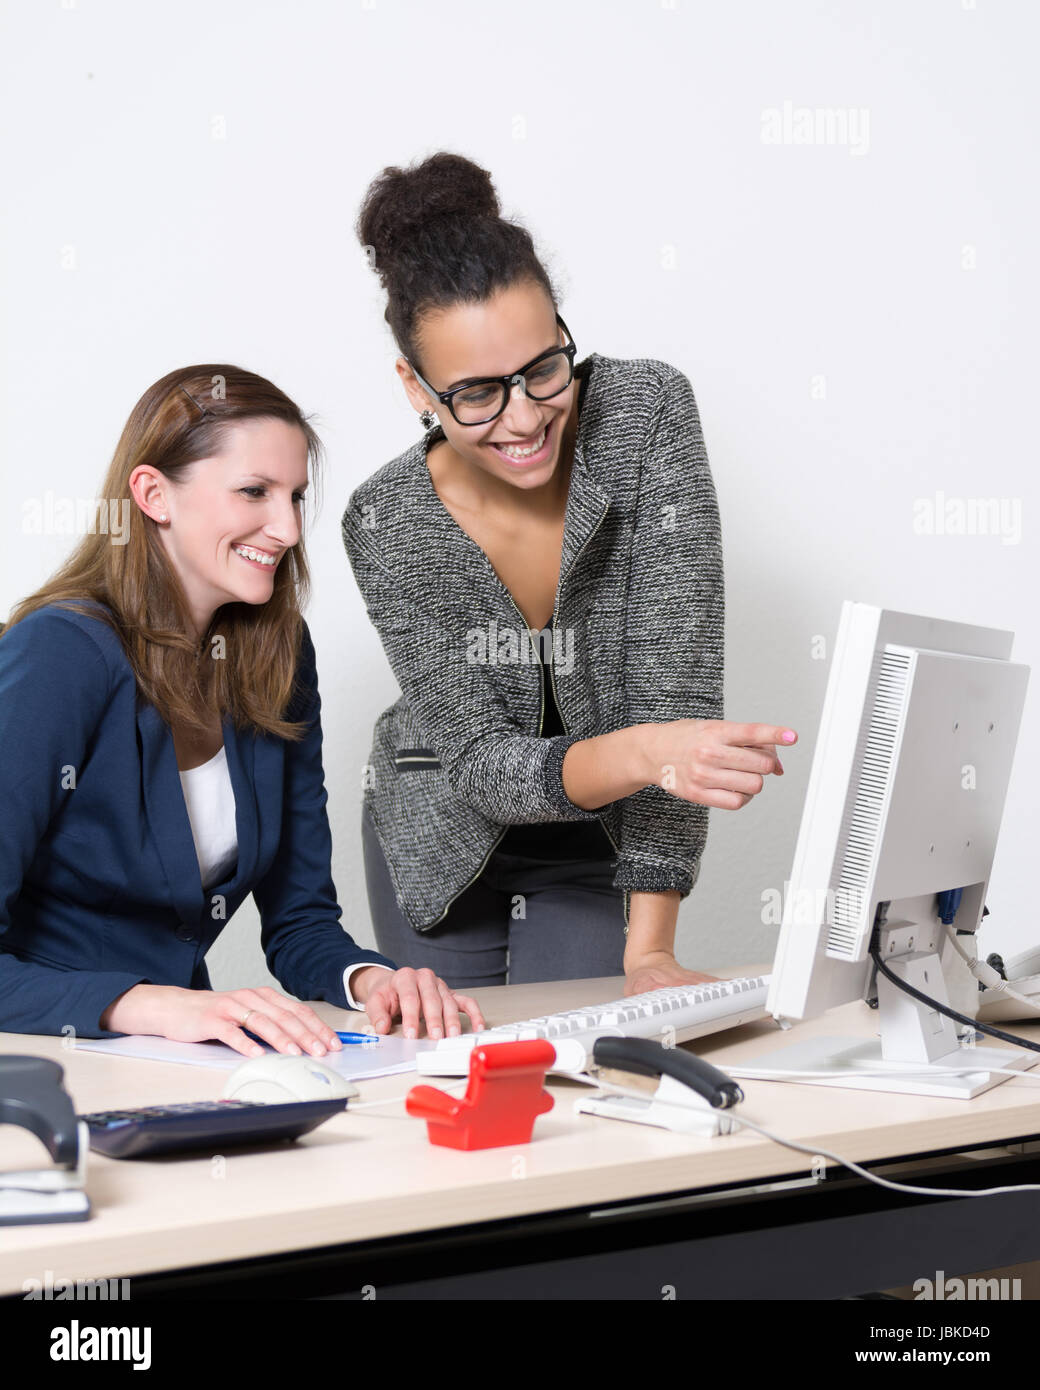 Zwei Frauen stehen bzw. sitzen vor dem Computer im Büro. Beide Frauen schauen zum Monitor und lächeln. Eine Frau zeigt zum Monitor. Stock Photo